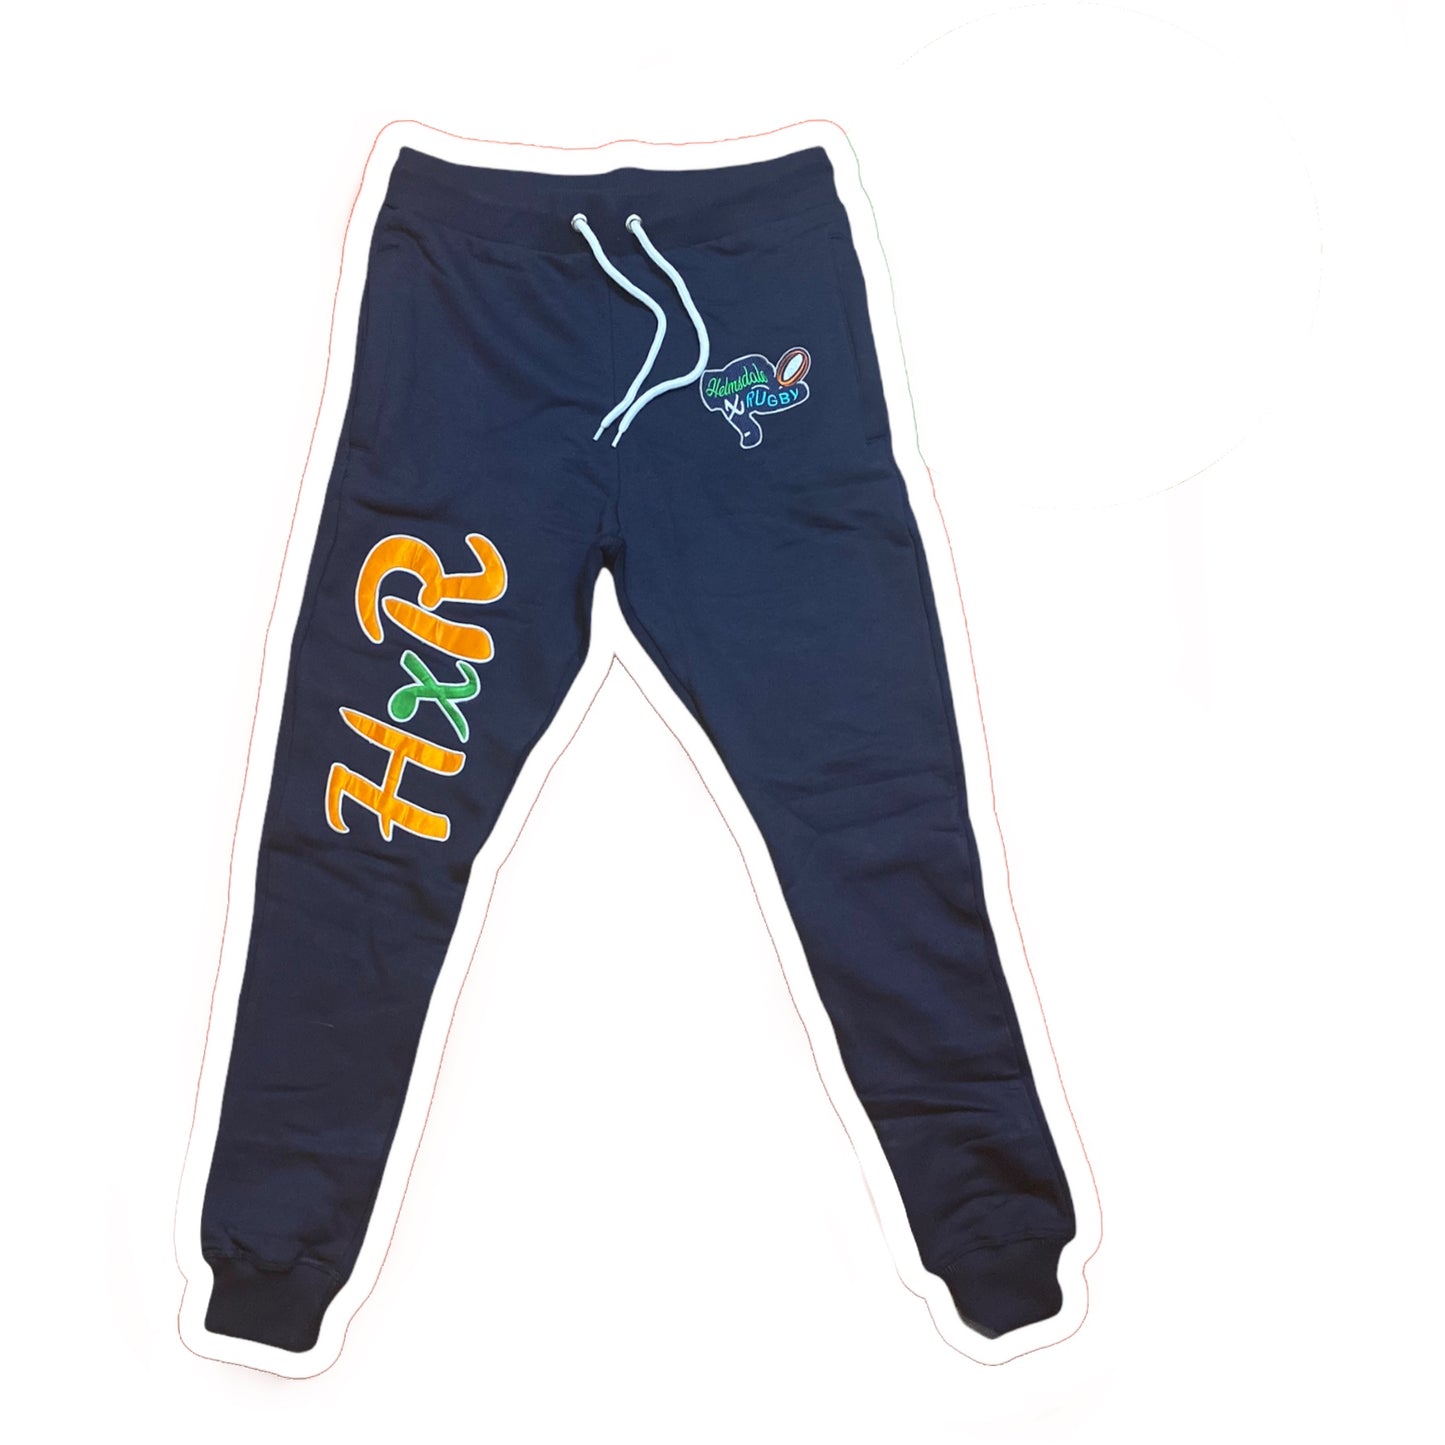 HXR “OG Navy” Jogger pants